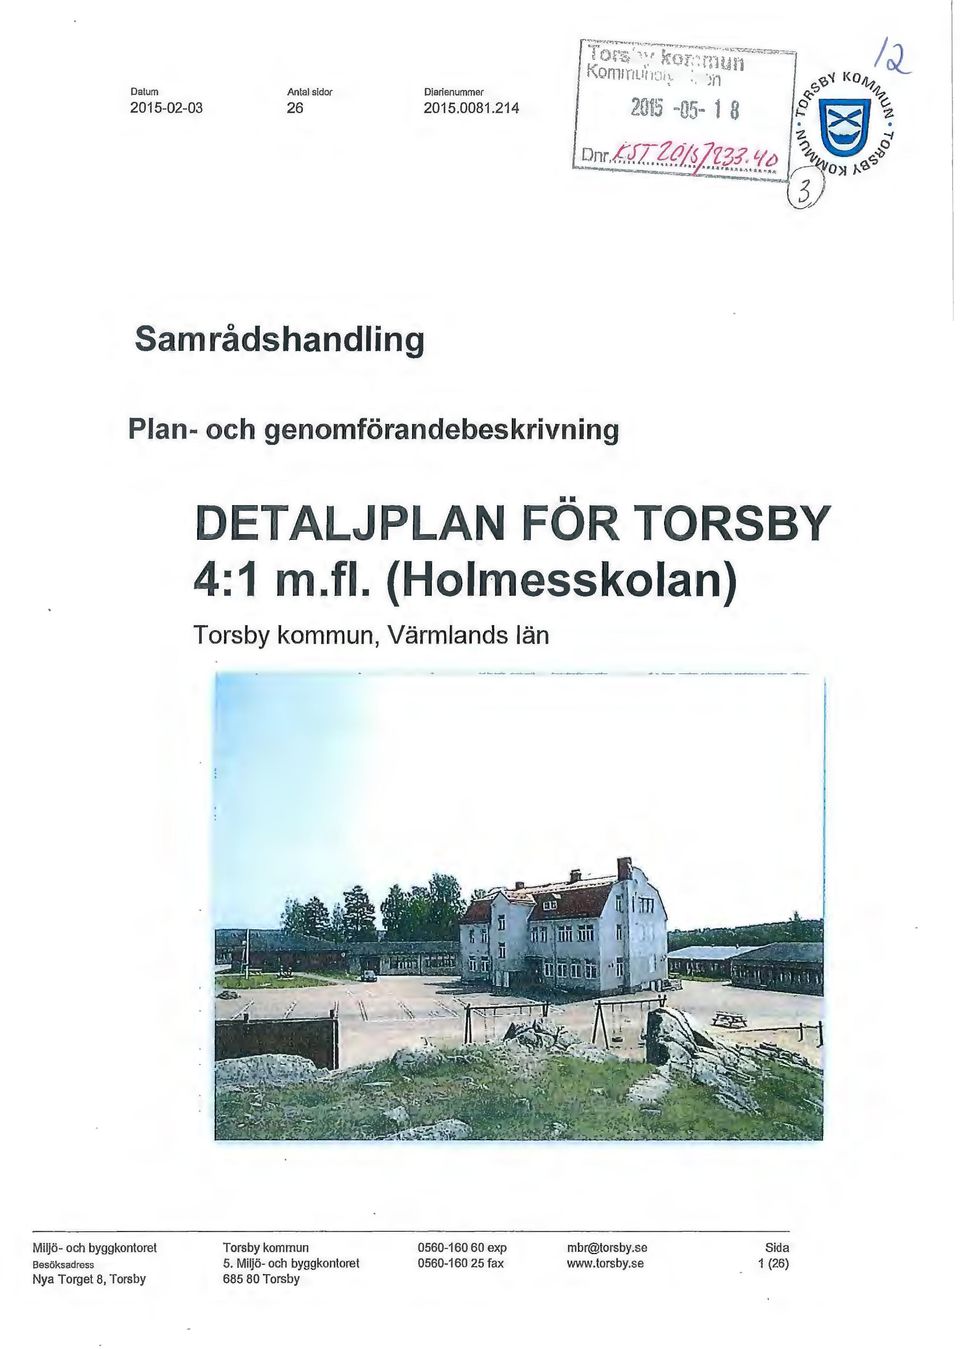 (Holmesskolan) Torsby kommun, Värmlands län Miljö- och byggkontoret Besöksadress Nya Torget